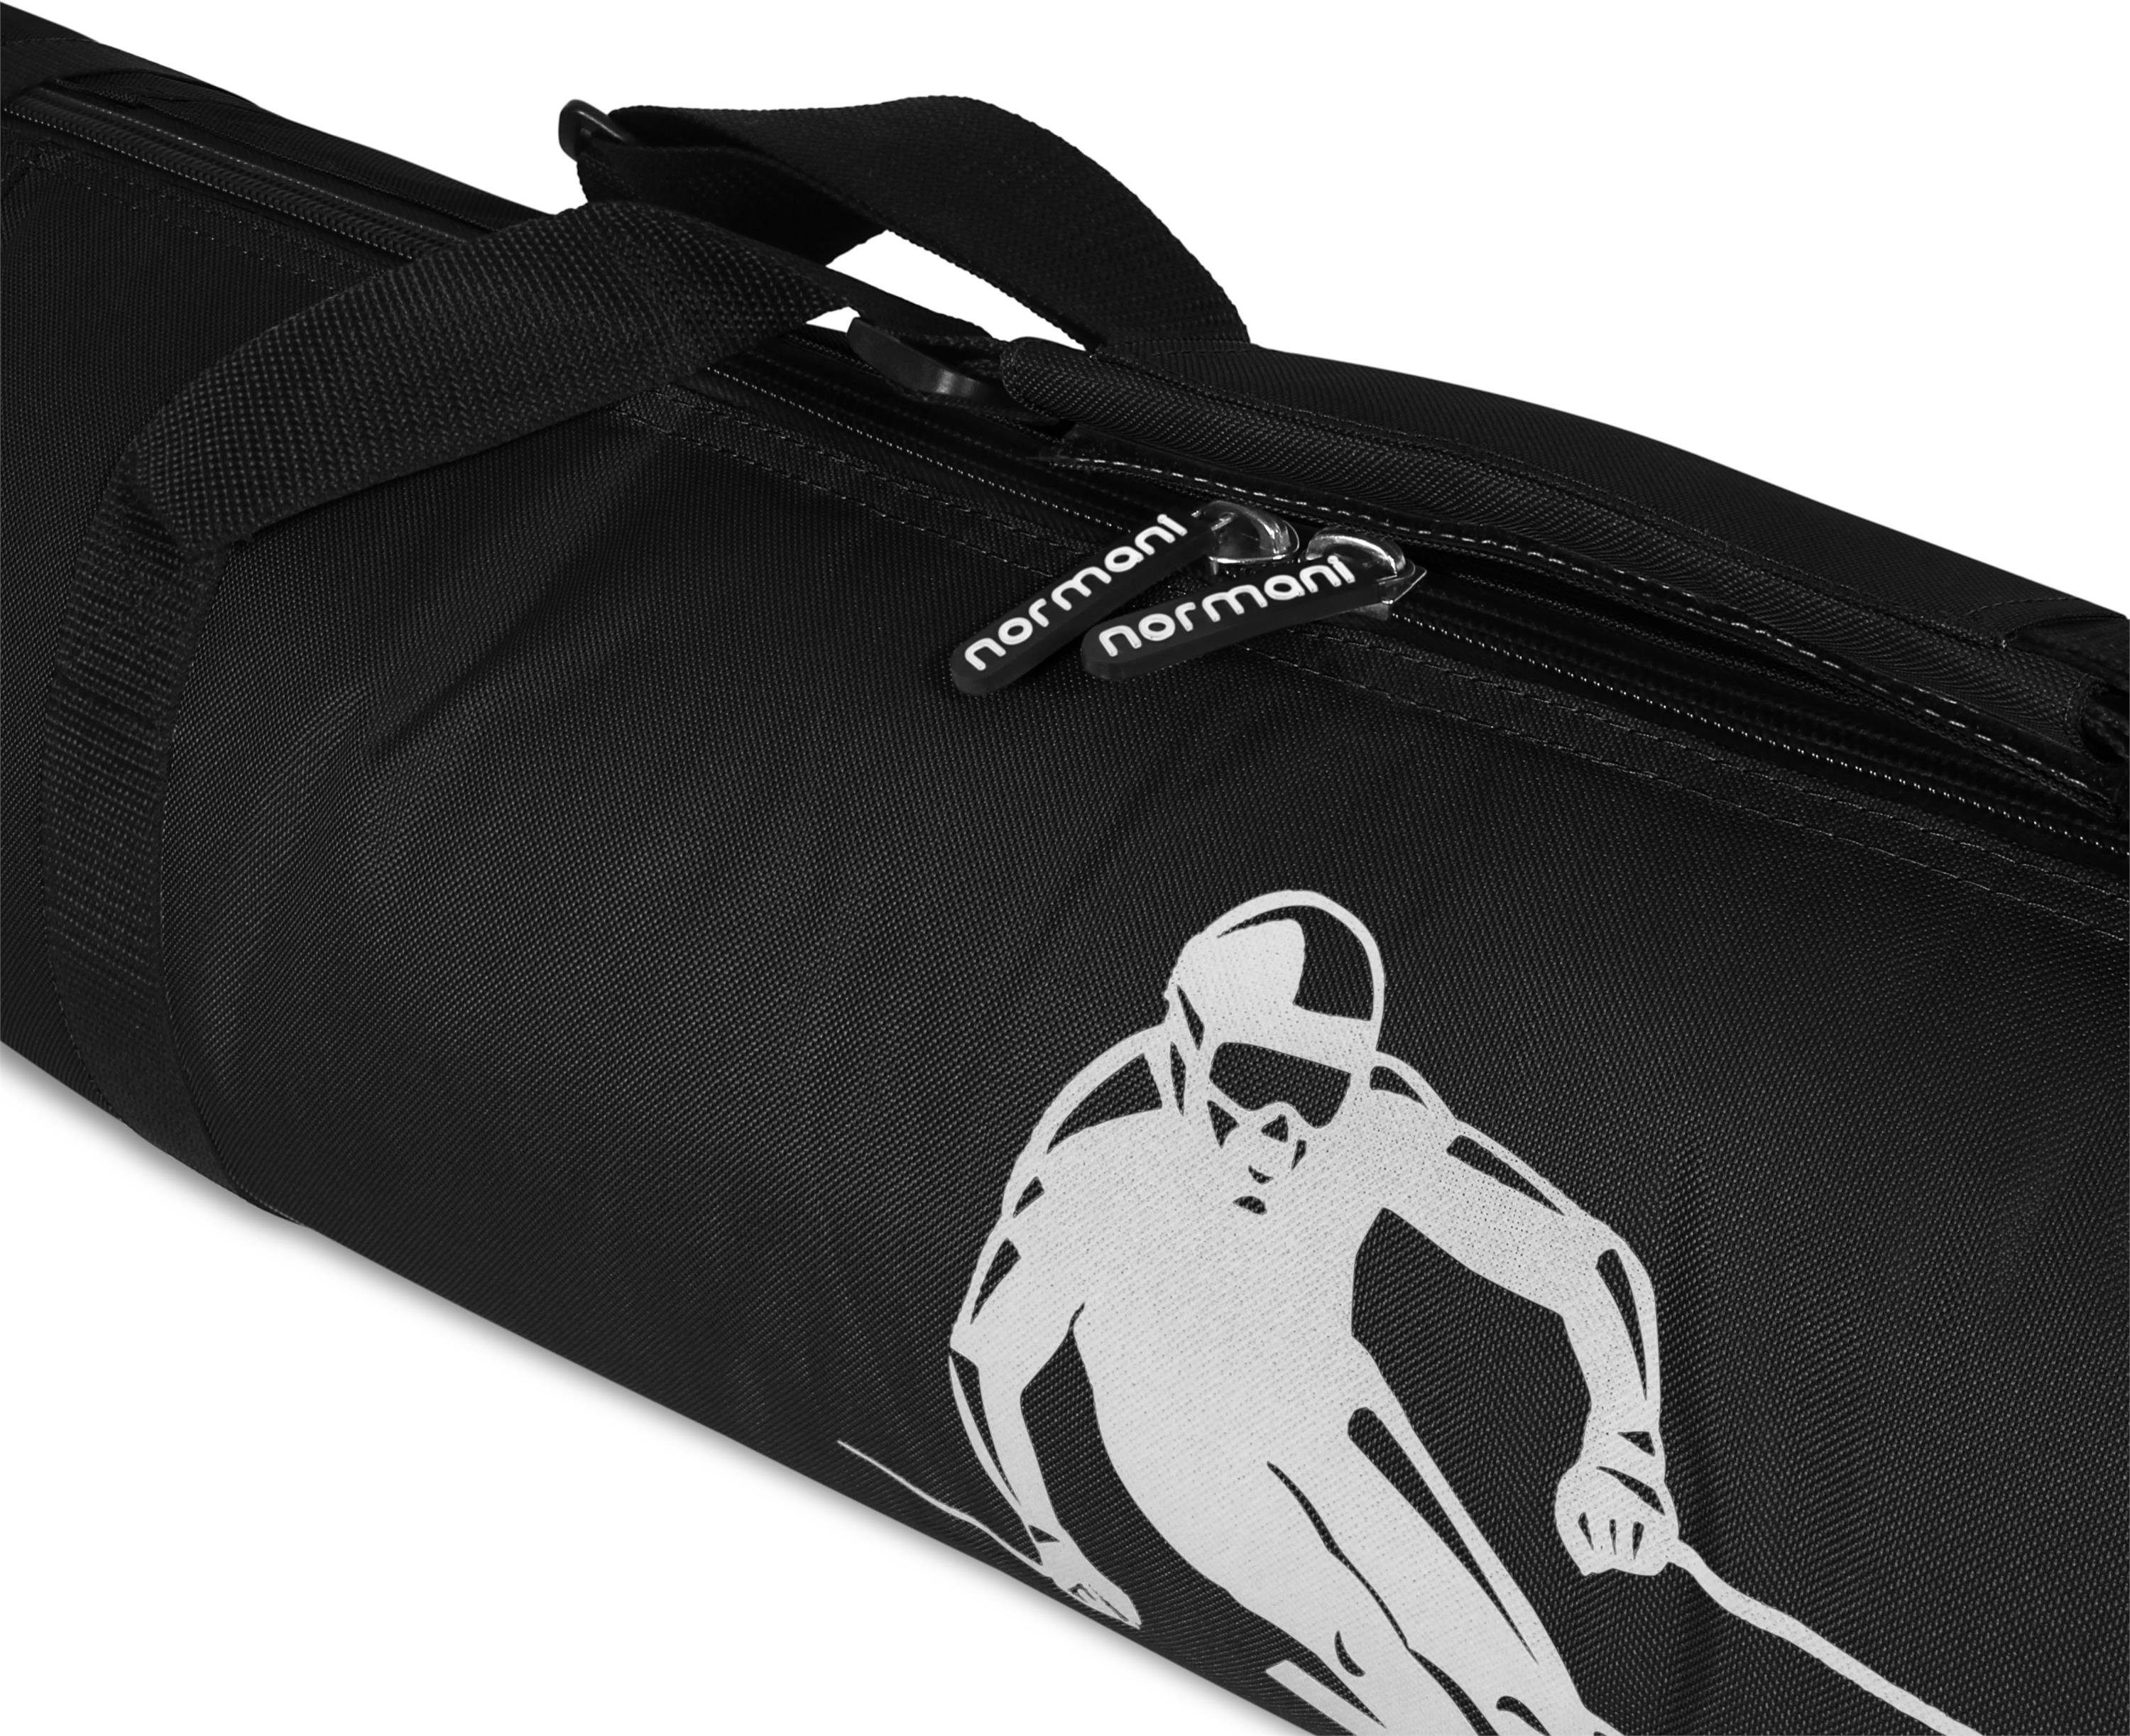 normani Sporttasche Skitasche Alpine Run Skisack 200, Skitasche für Skistöcke Aufbewahrungstasche und Skier Transporttasche - Schwarz